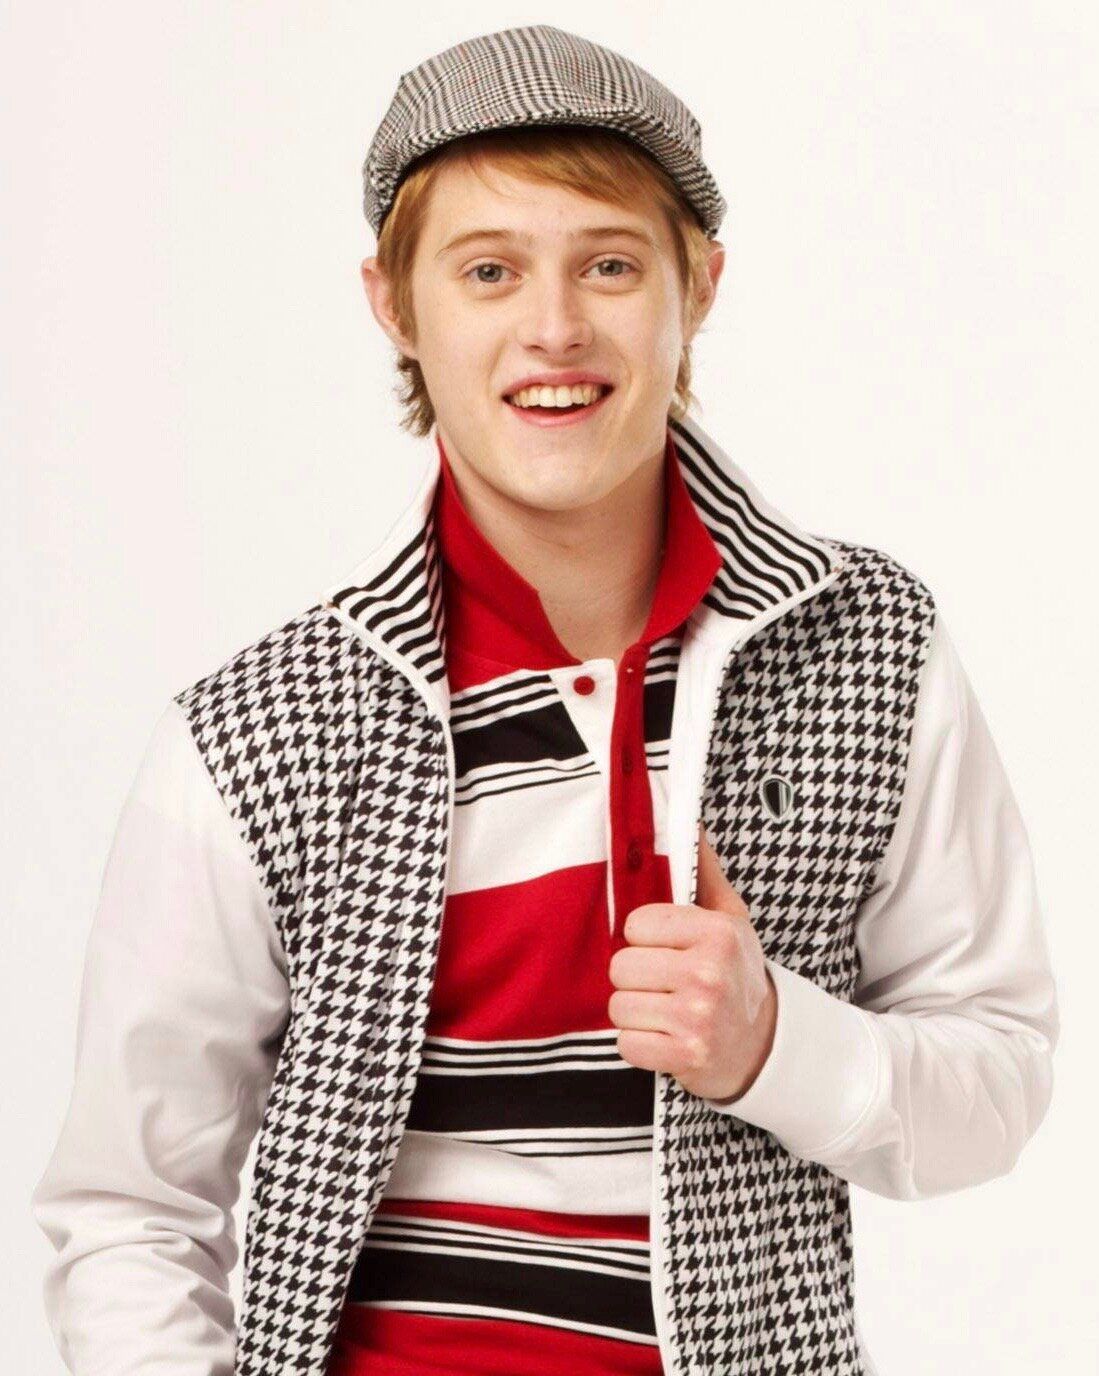 Lucas Grabeel played Ryan in High School Musical.